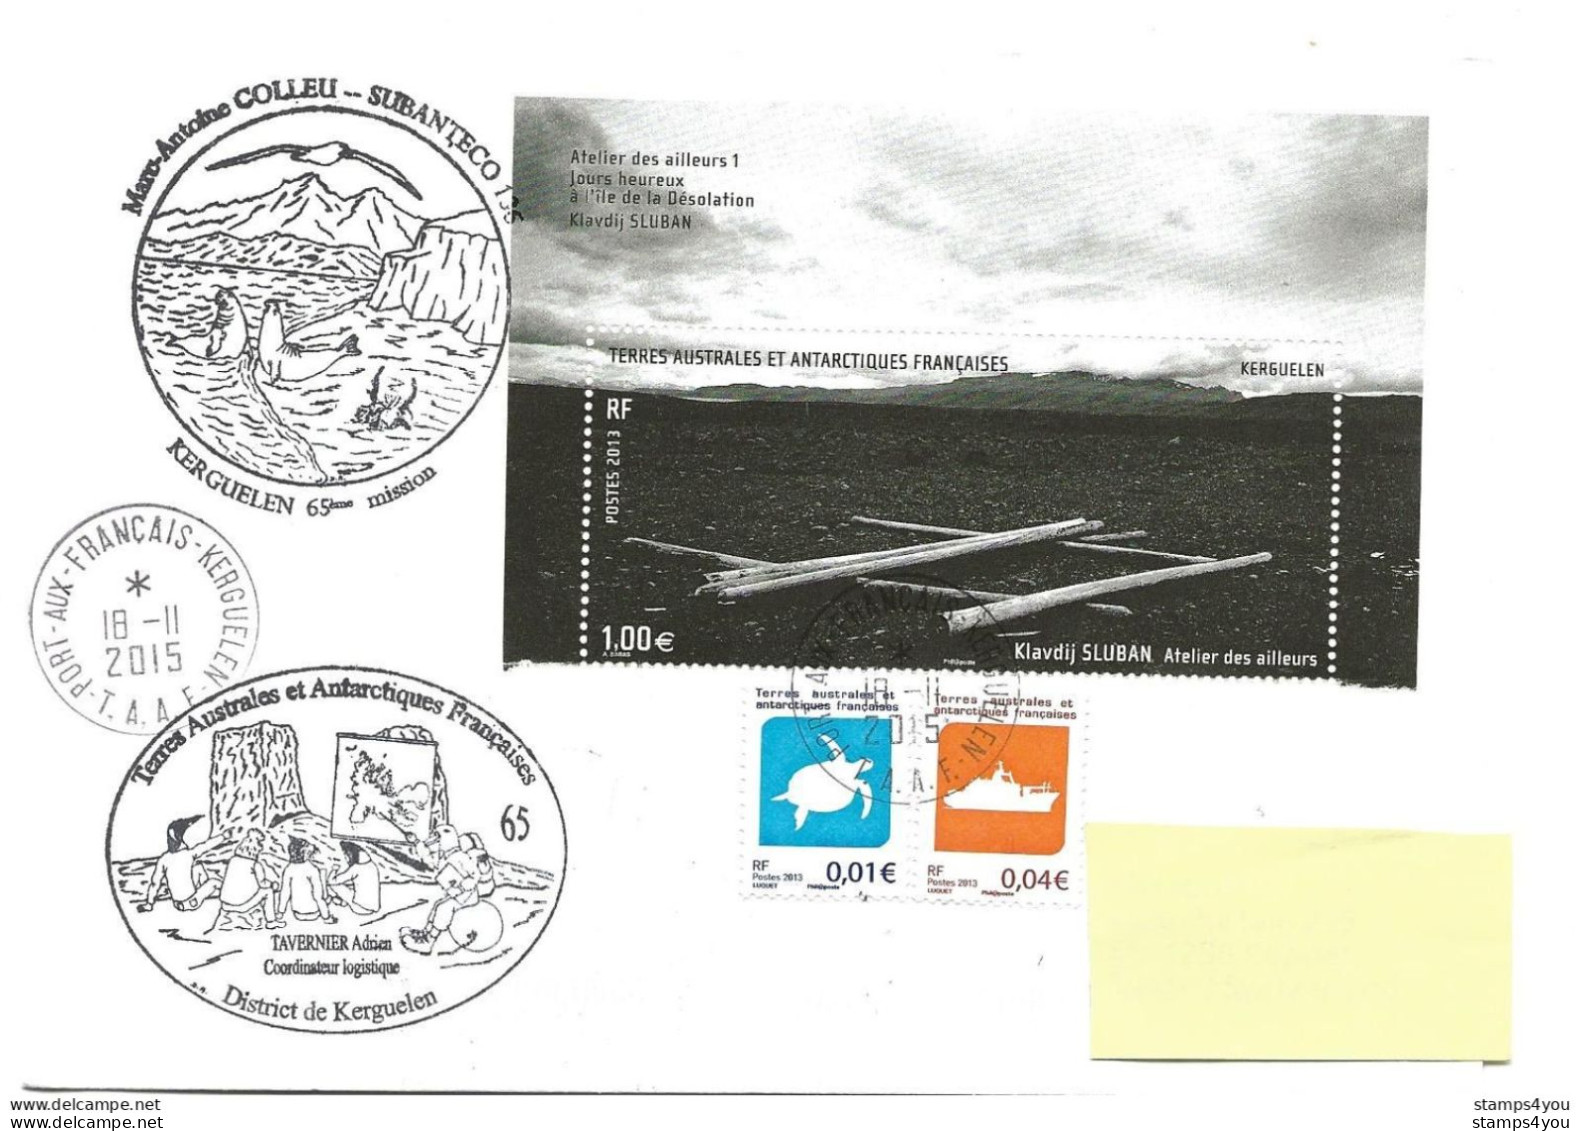 440 - 34 - Enveloppe TAAF Kerguelen - Cachets Illustrés Mission 65 - 2015 - Onderzoeksstations